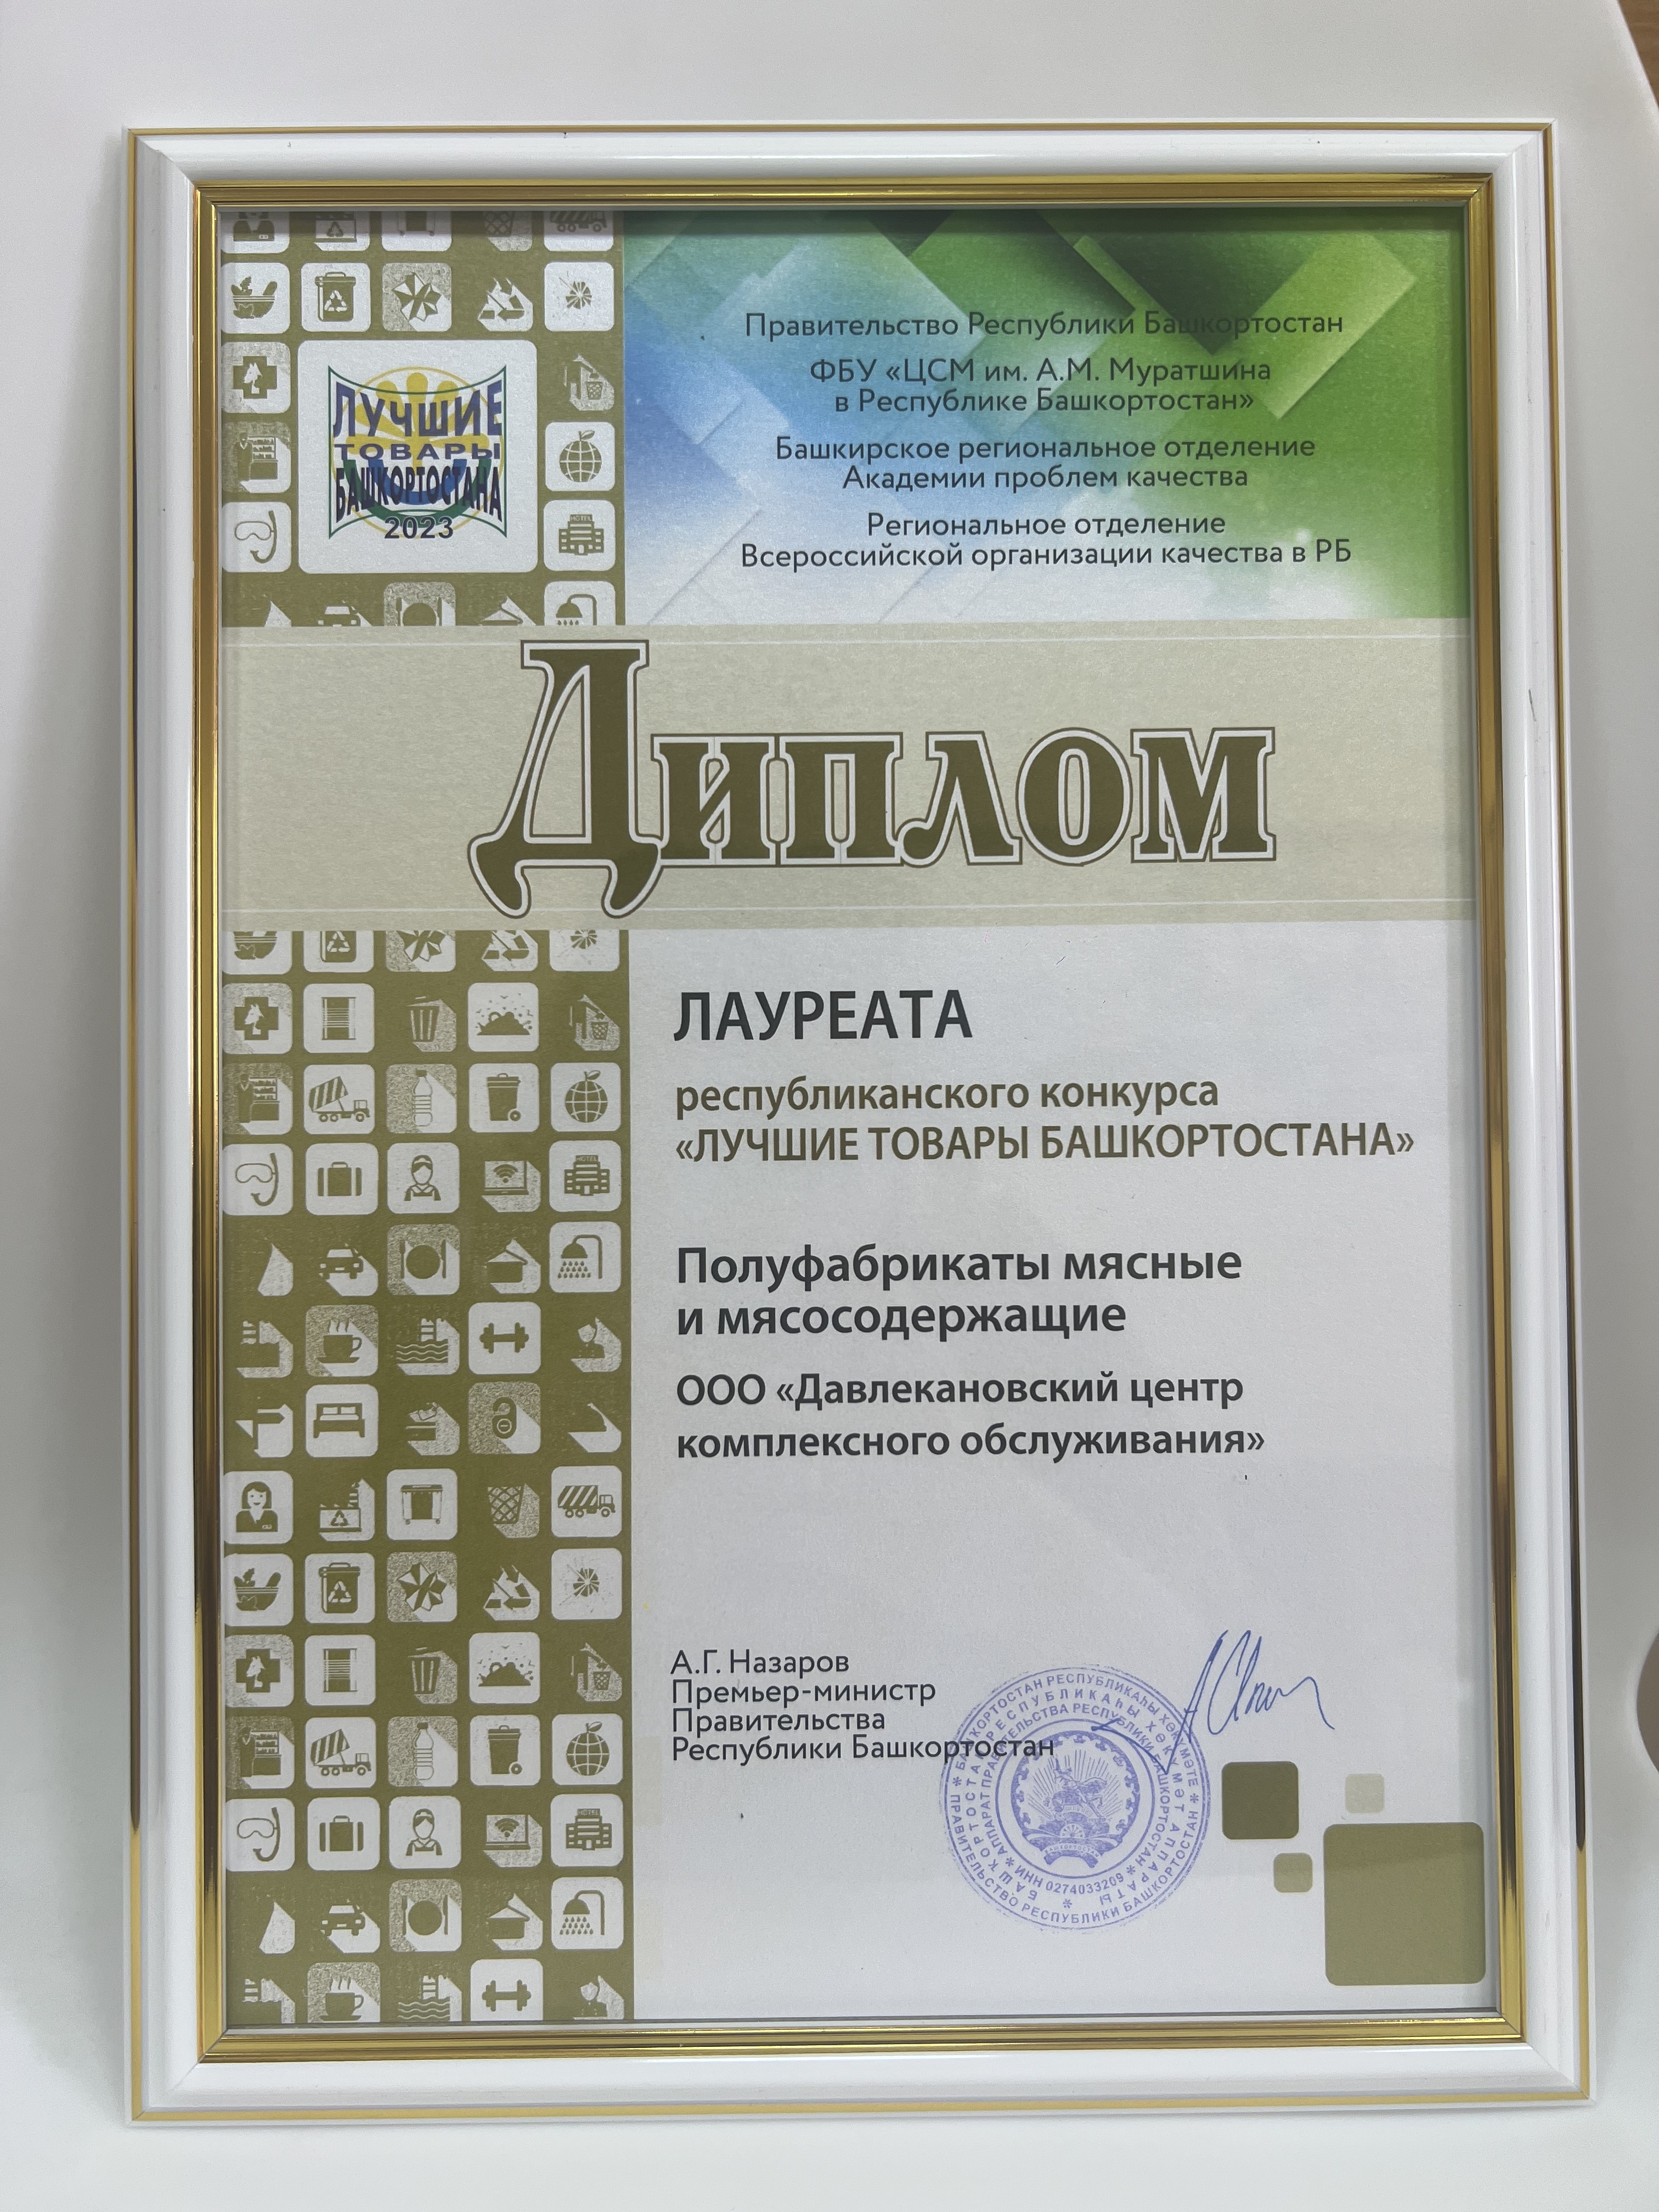 ООО «Центр питания» Чишминского района признан лучшим в номинации «Предприятия сферы социального питания»